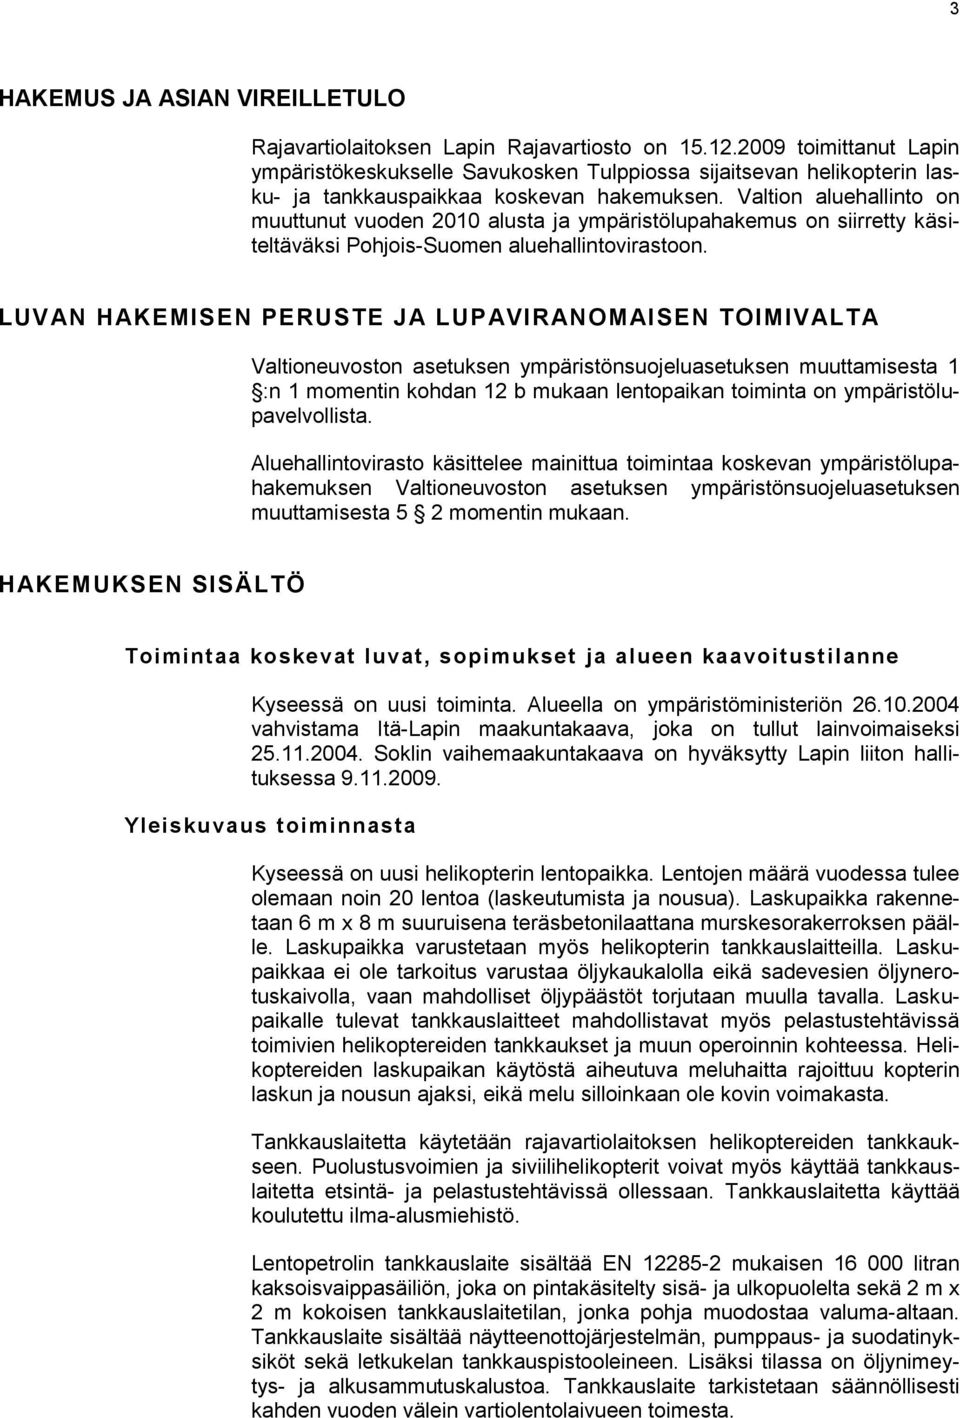 Valtion aluehallinto on muuttunut vuoden 2010 alusta ja ympäristölupahakemus on siirretty käsiteltäväksi Pohjois-Suomen aluehallintovirastoon.